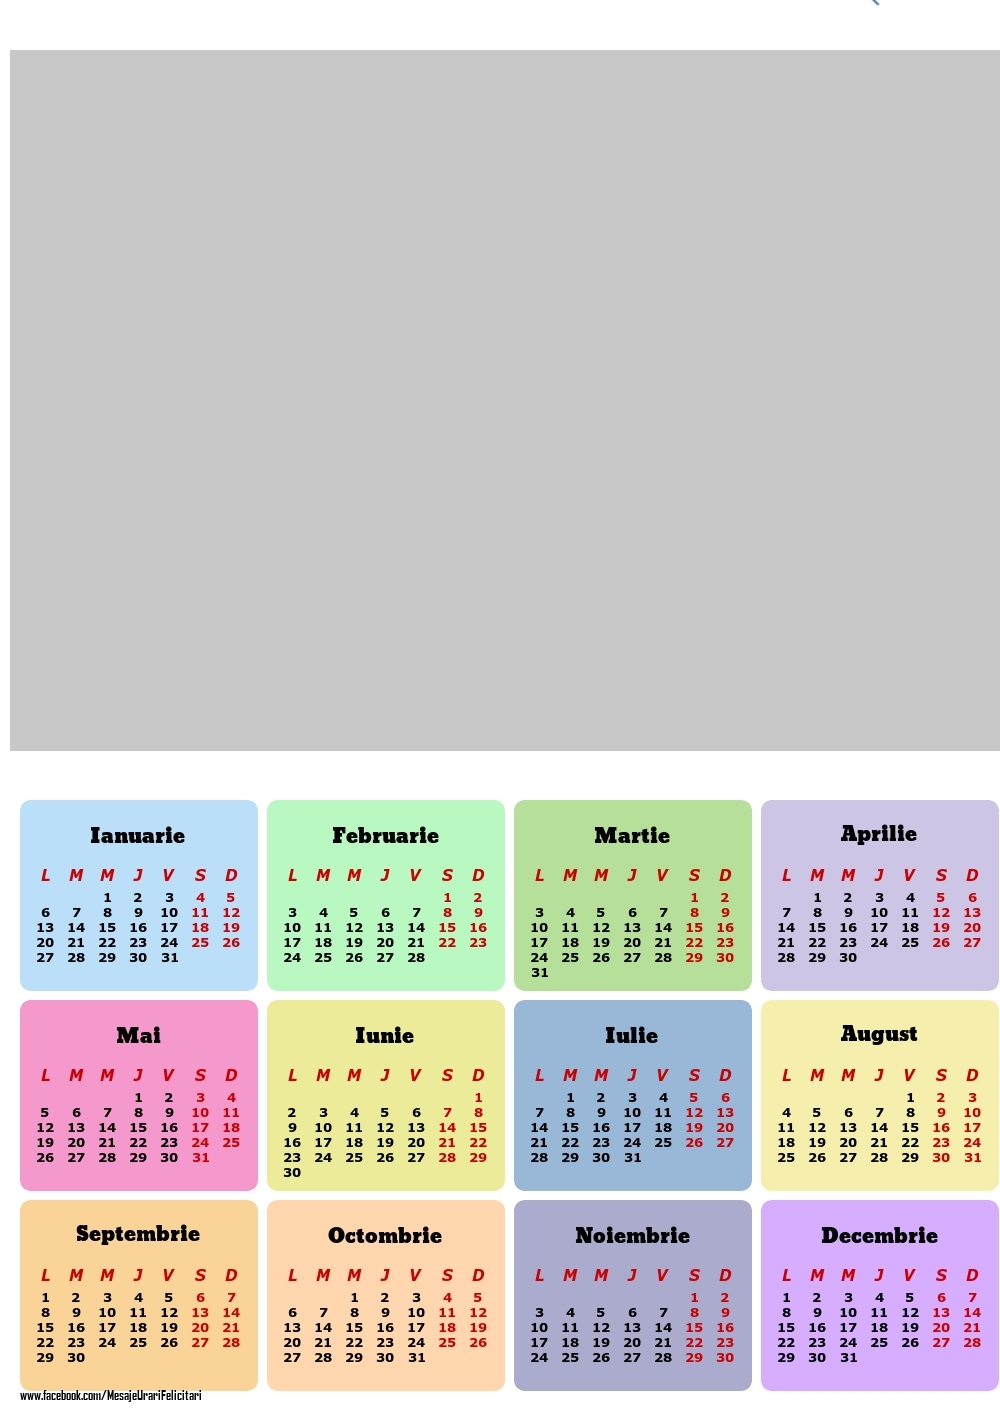 Felicitari personalizate cu calendare - Calendar 2025 - Multicolor